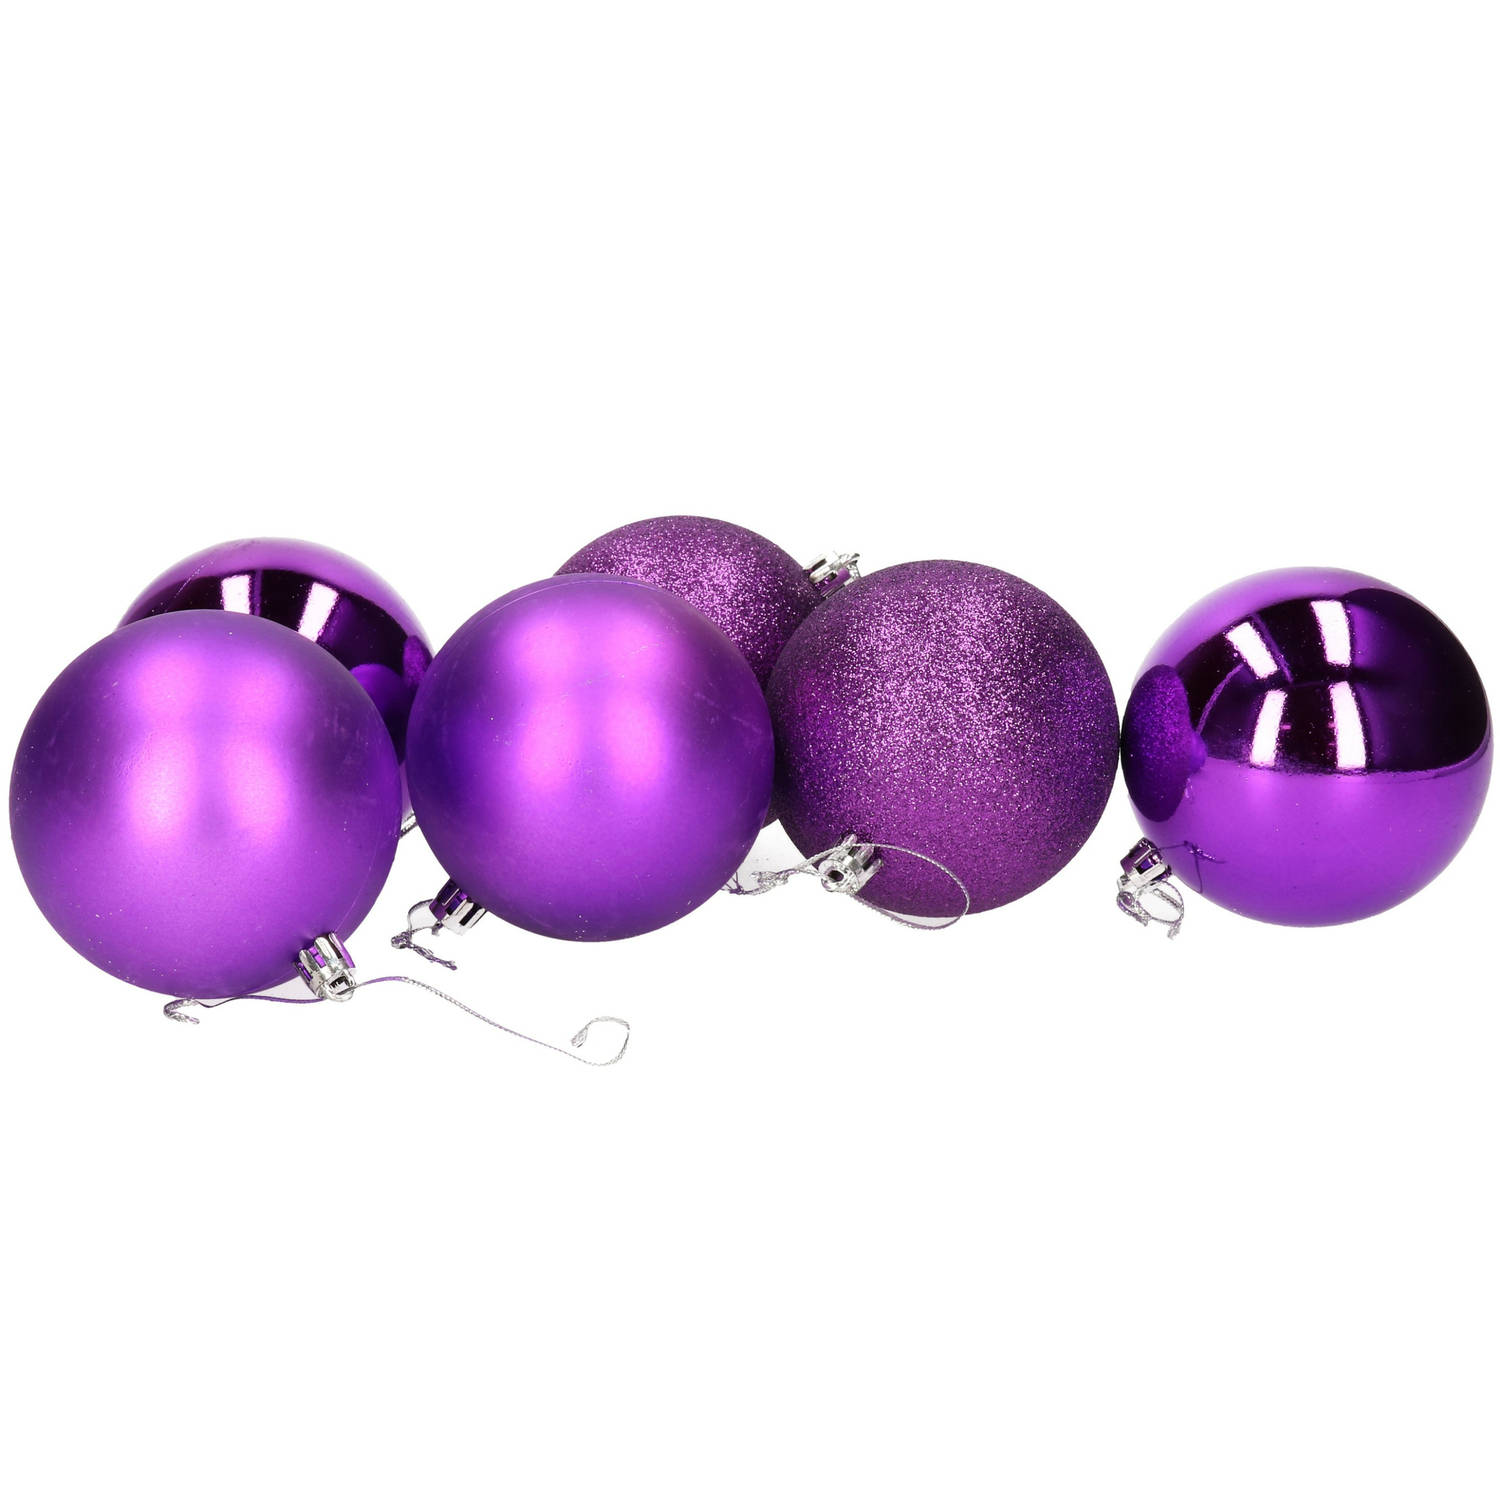 beton Frank Worthley Implicaties 6x stuks kerstballen paars mix van mat/glans/glitter kunststof 8 cm -  Kerstbal | Hovenier.nl